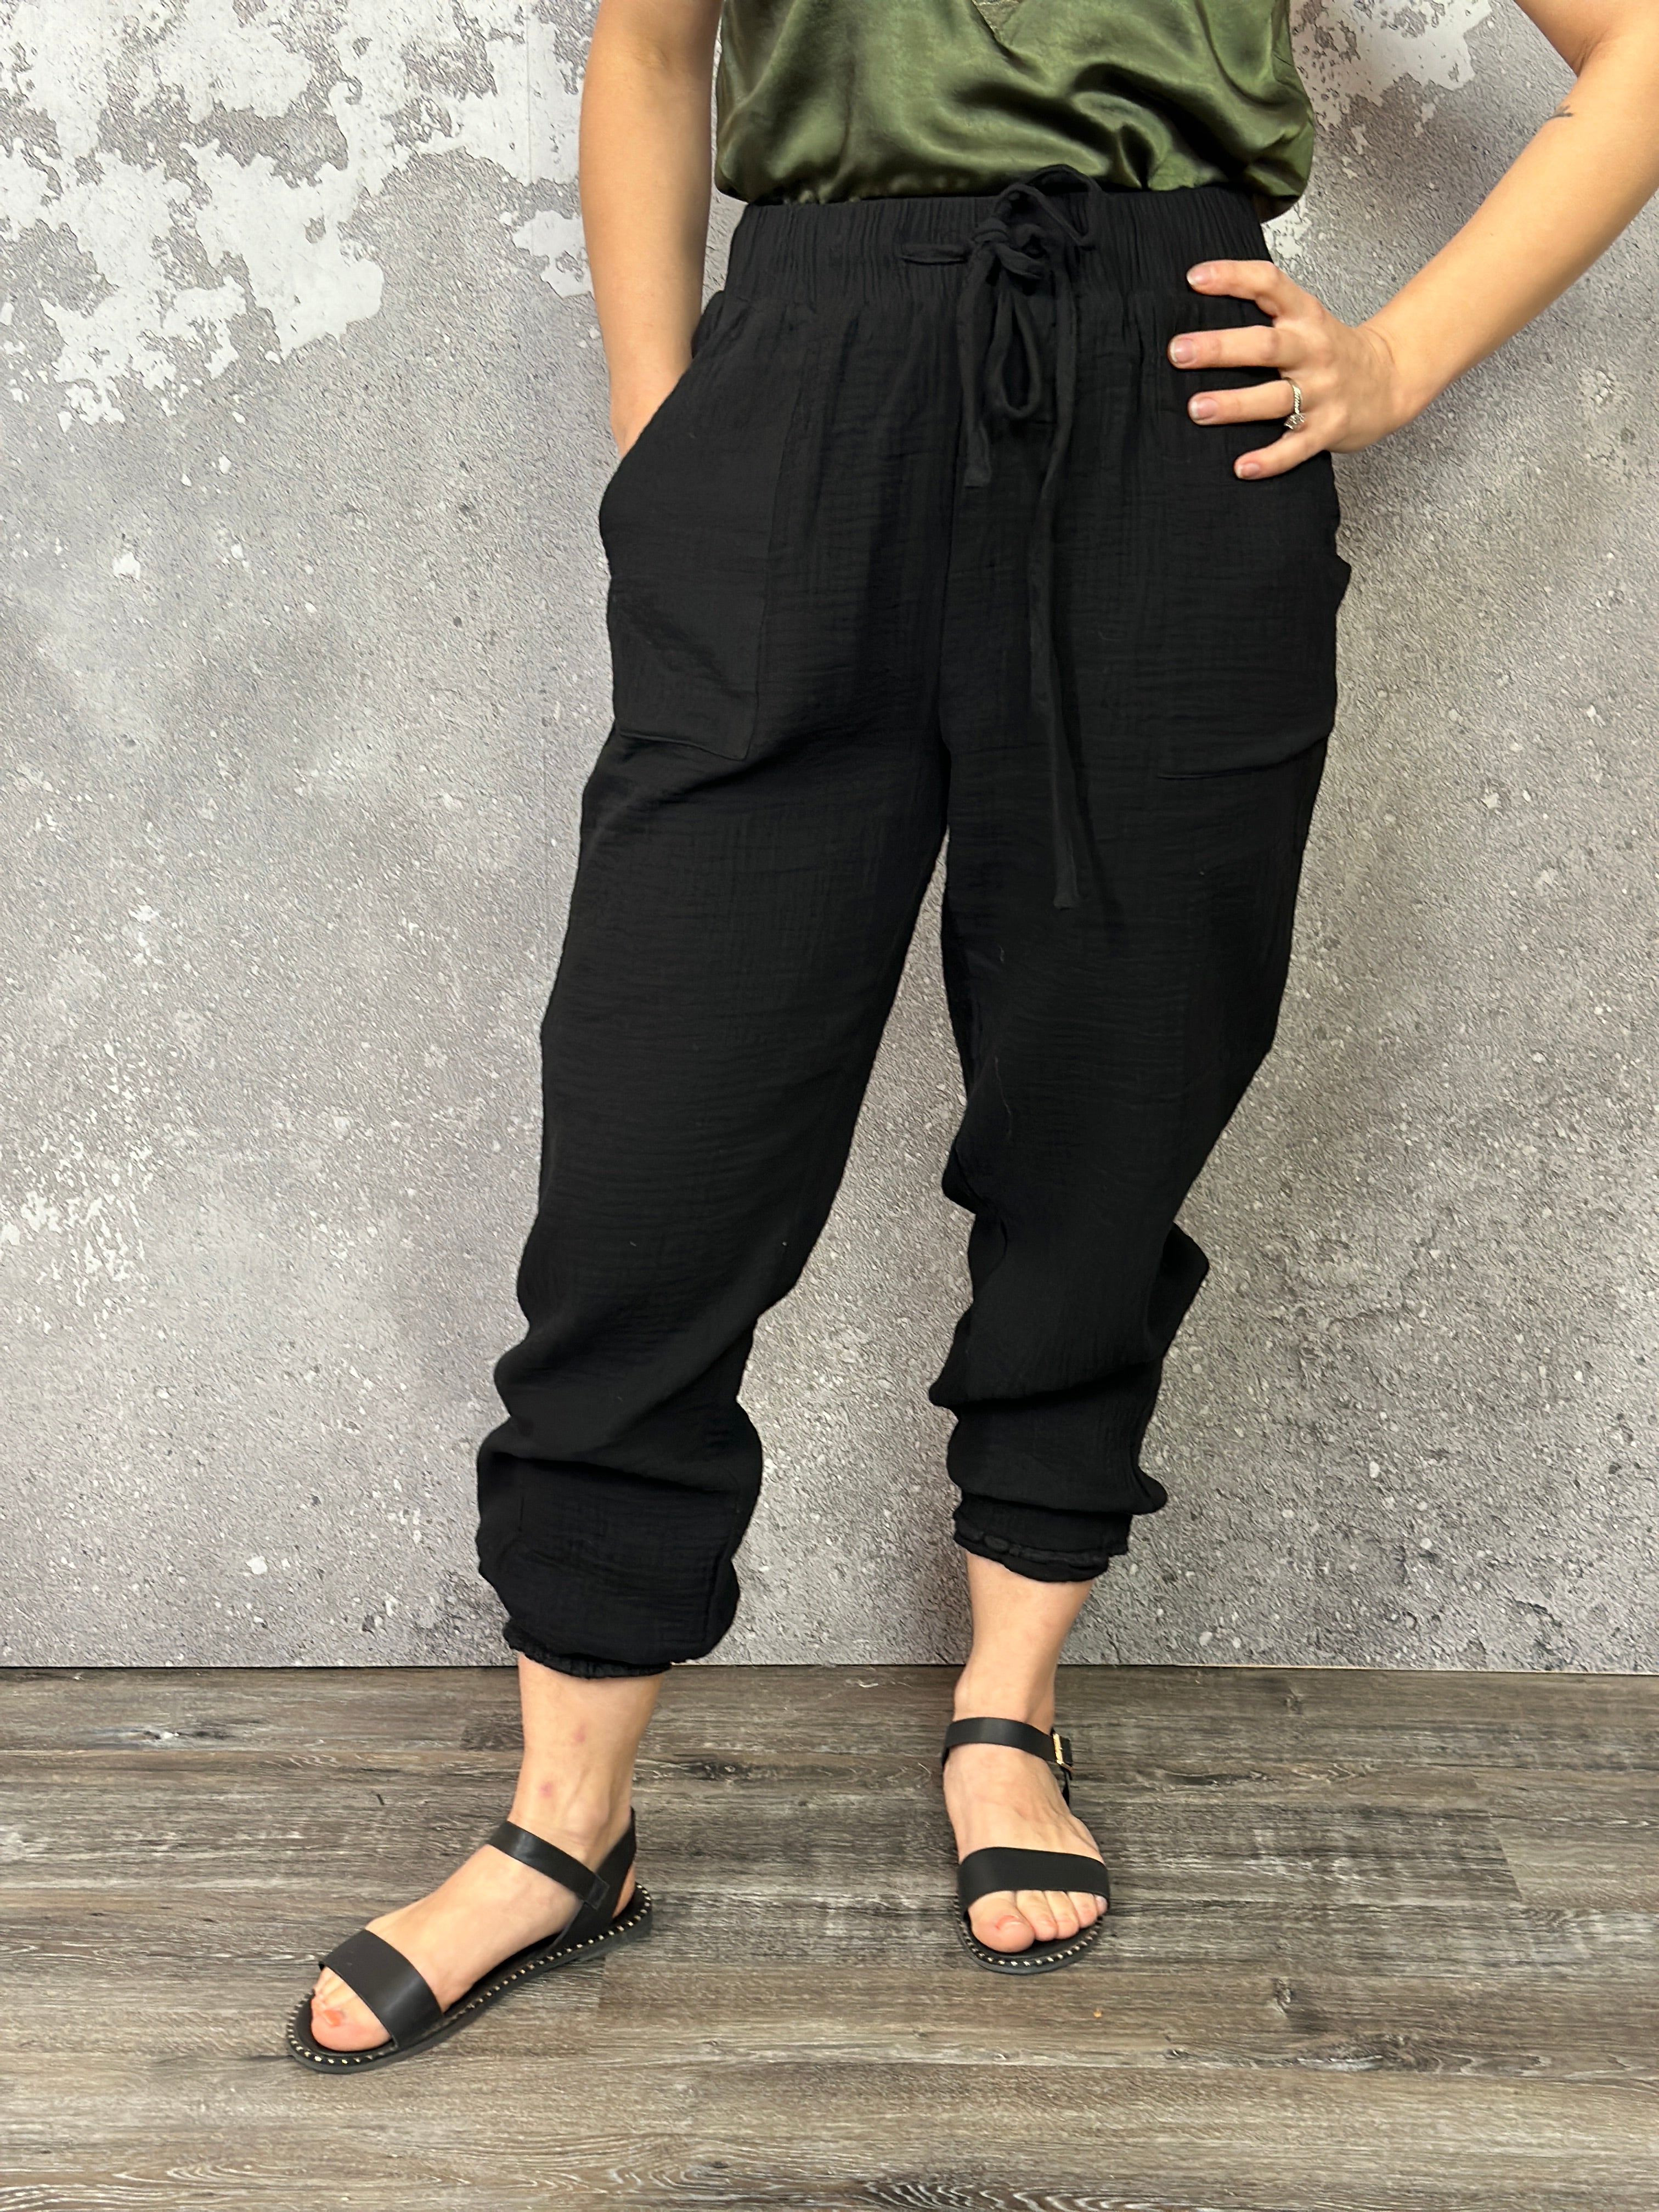 Rachelle Cotton Gauze Pants - Black (Small - 3X) - The Pink Porcupine ltd.